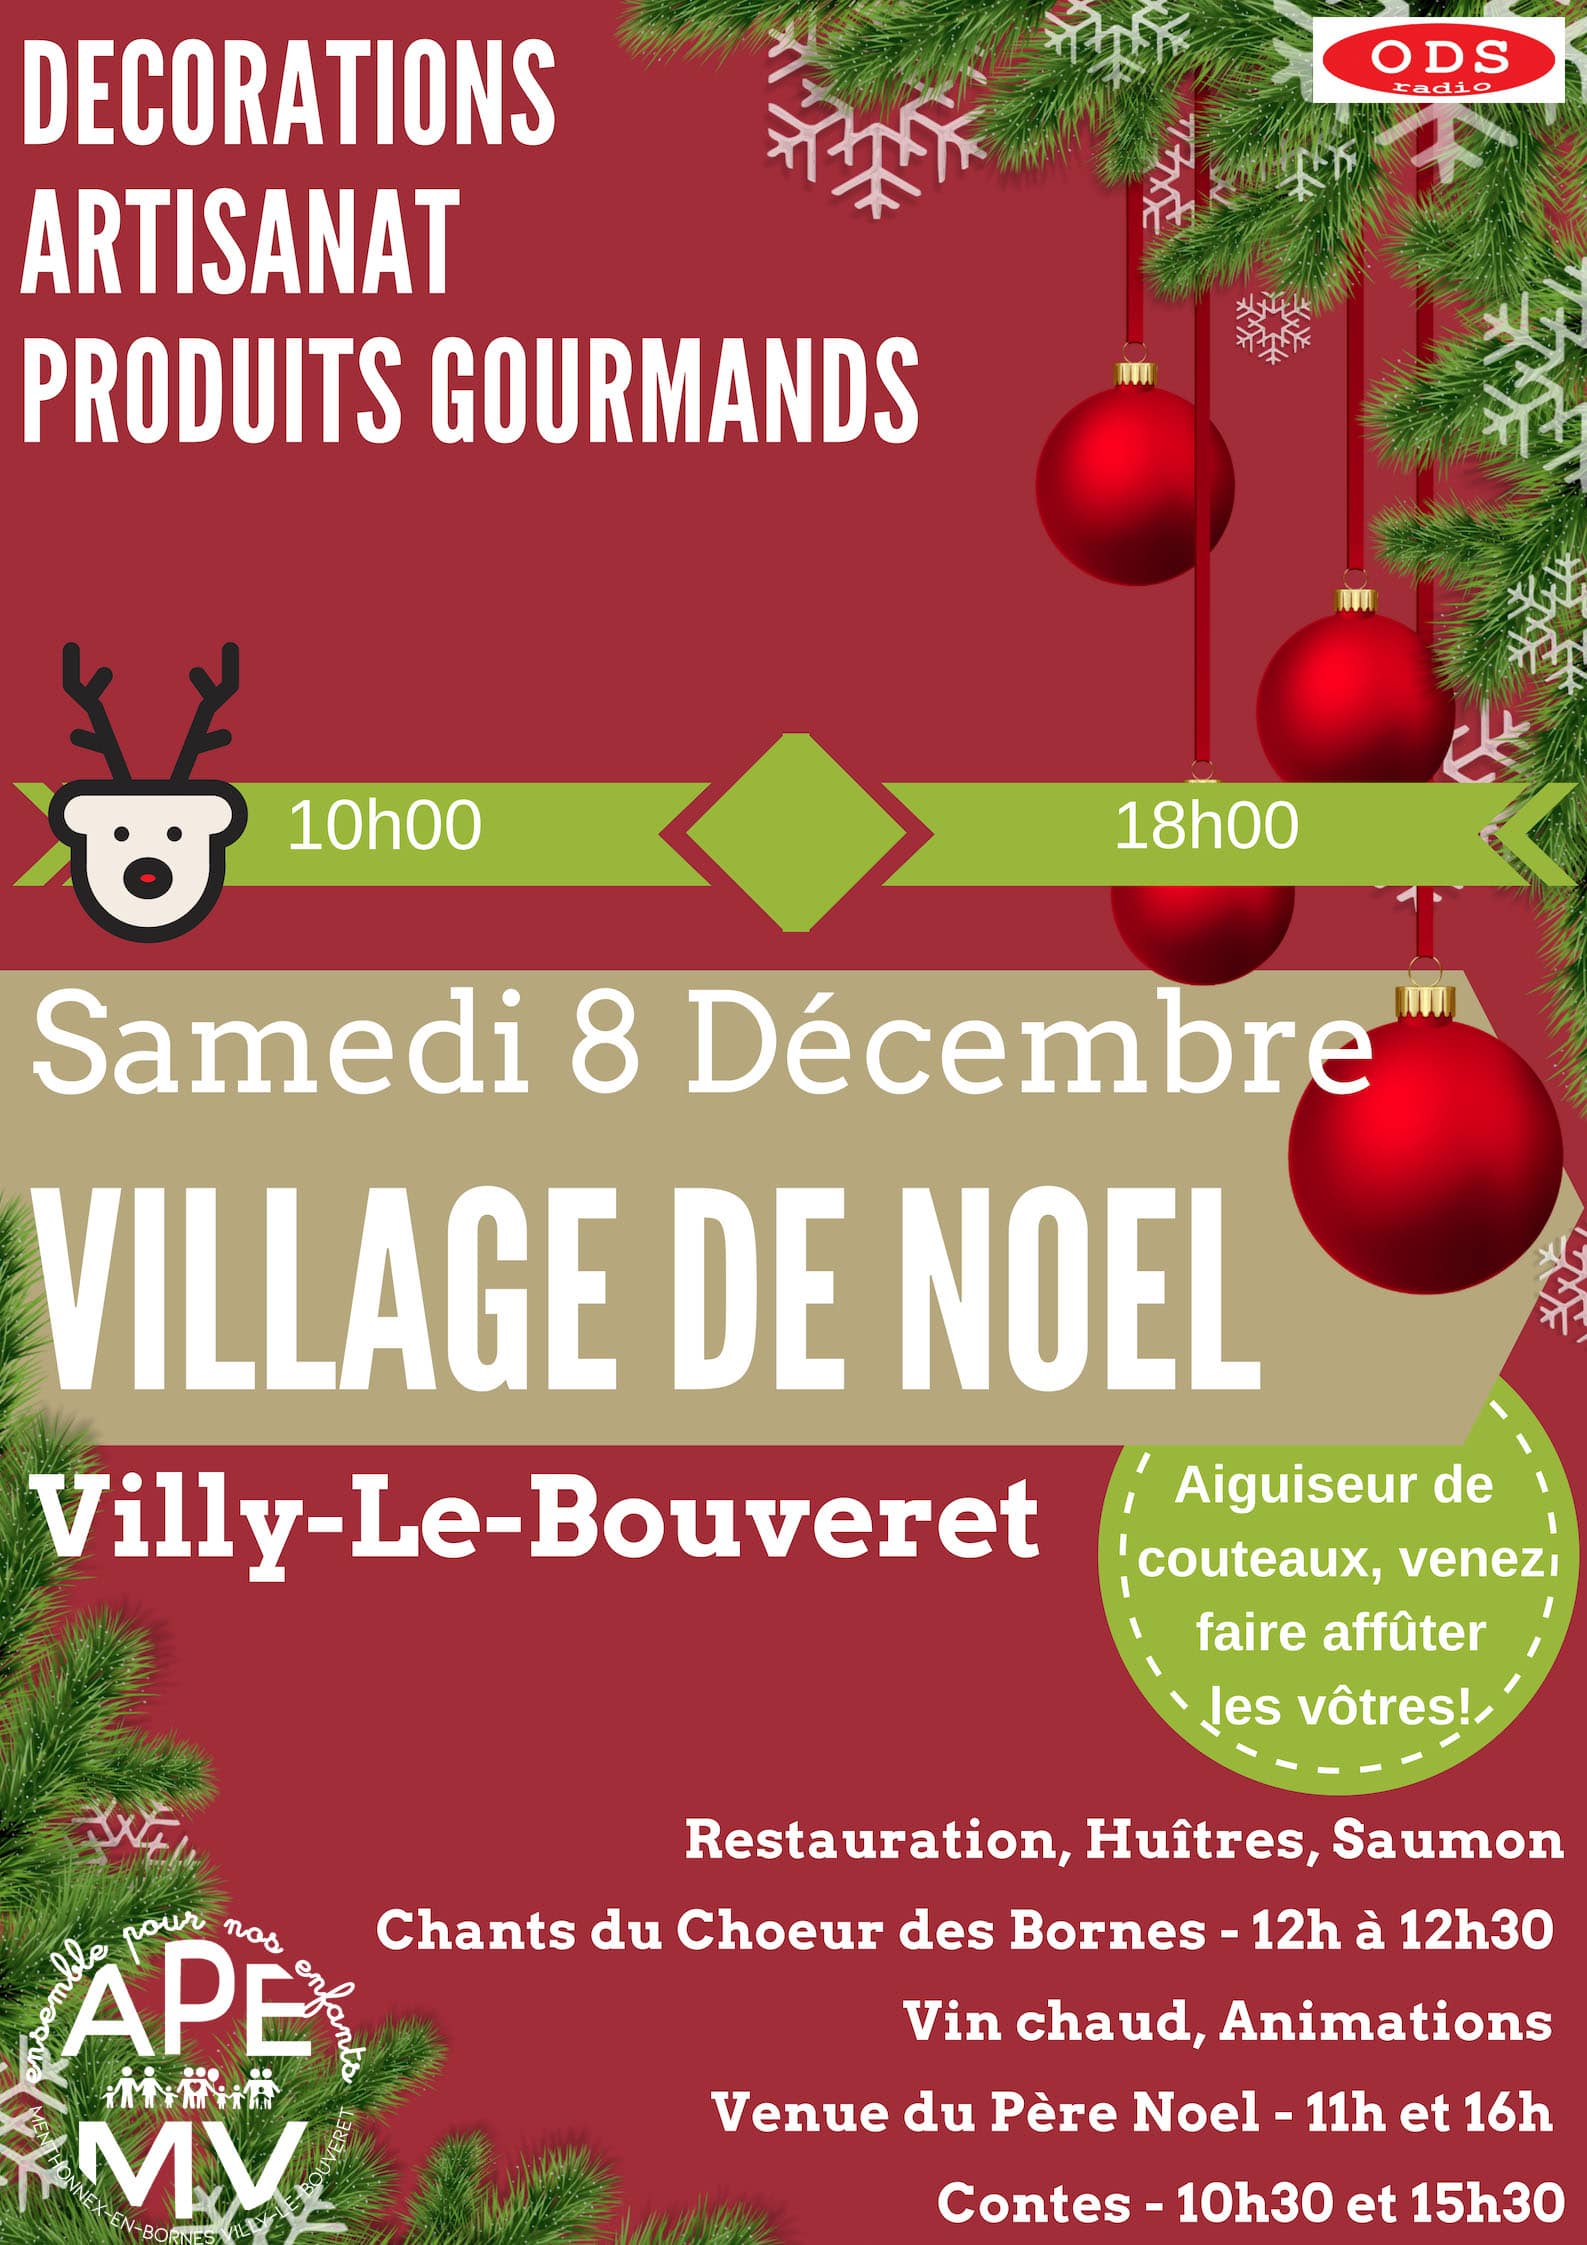 Affiche du marché de noël de l'APEMV à Villy-le-Bouveret le 8 décembre 2018